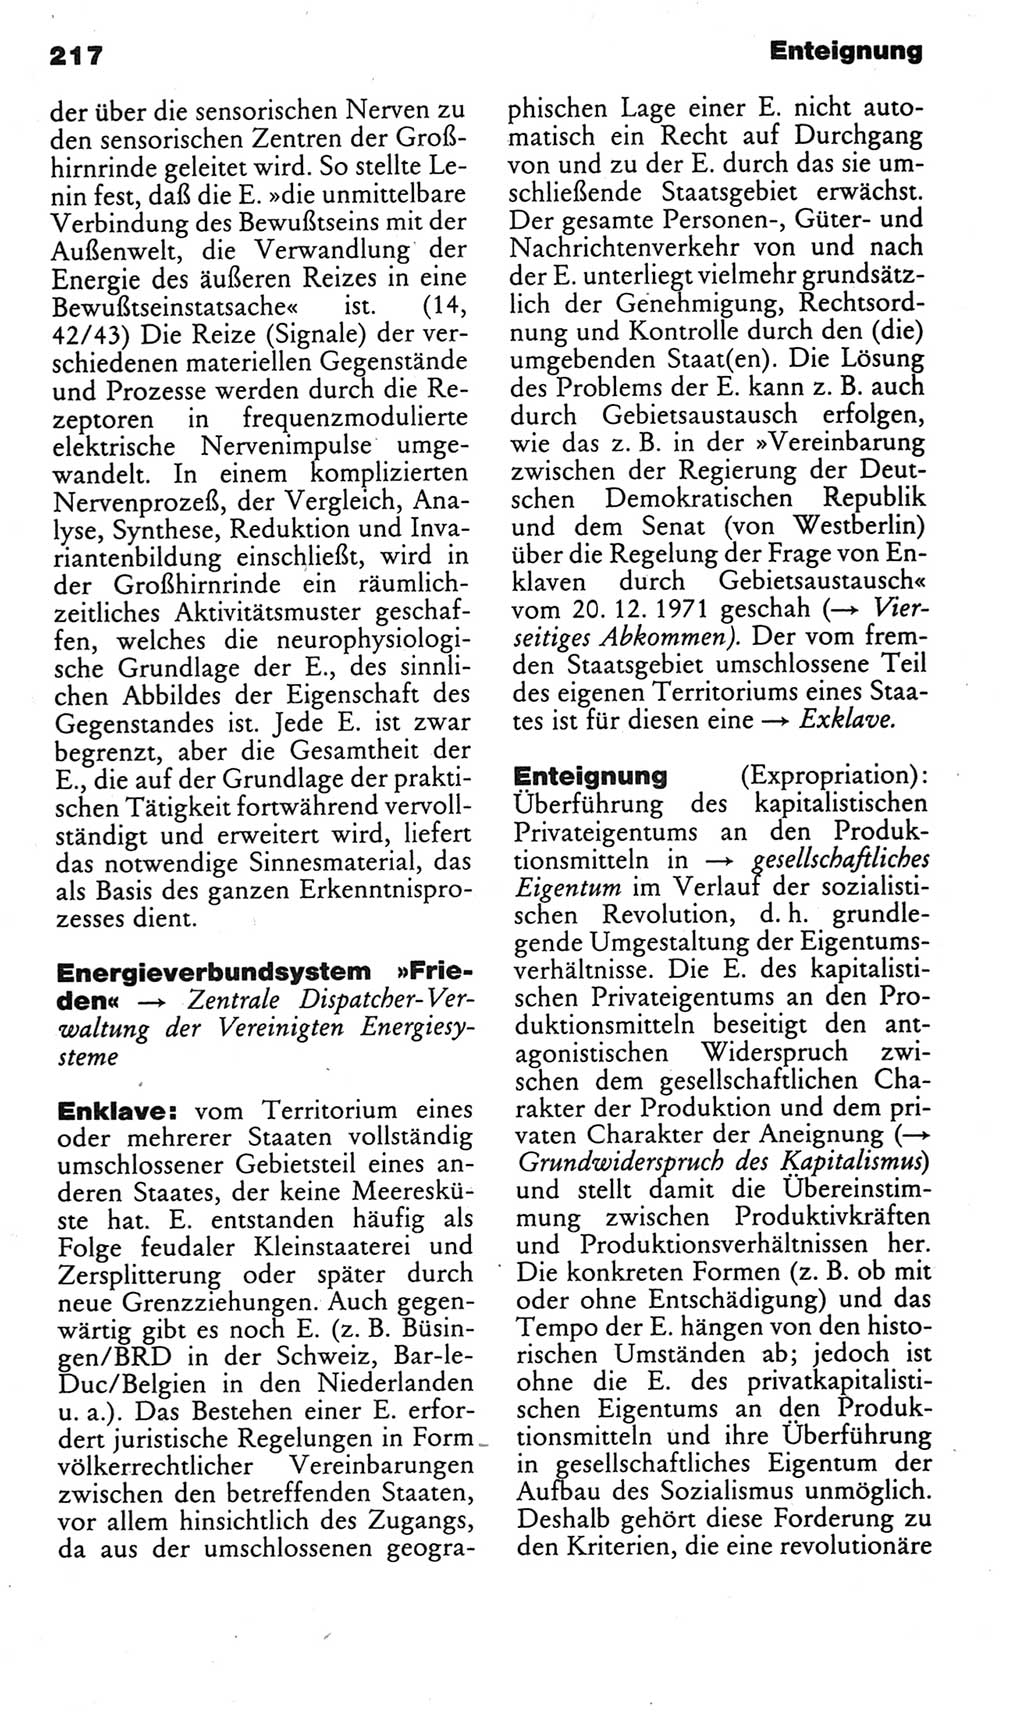 Kleines politisches Wörterbuch [Deutsche Demokratische Republik (DDR)] 1985, Seite 217 (Kl. pol. Wb. DDR 1985, S. 217)